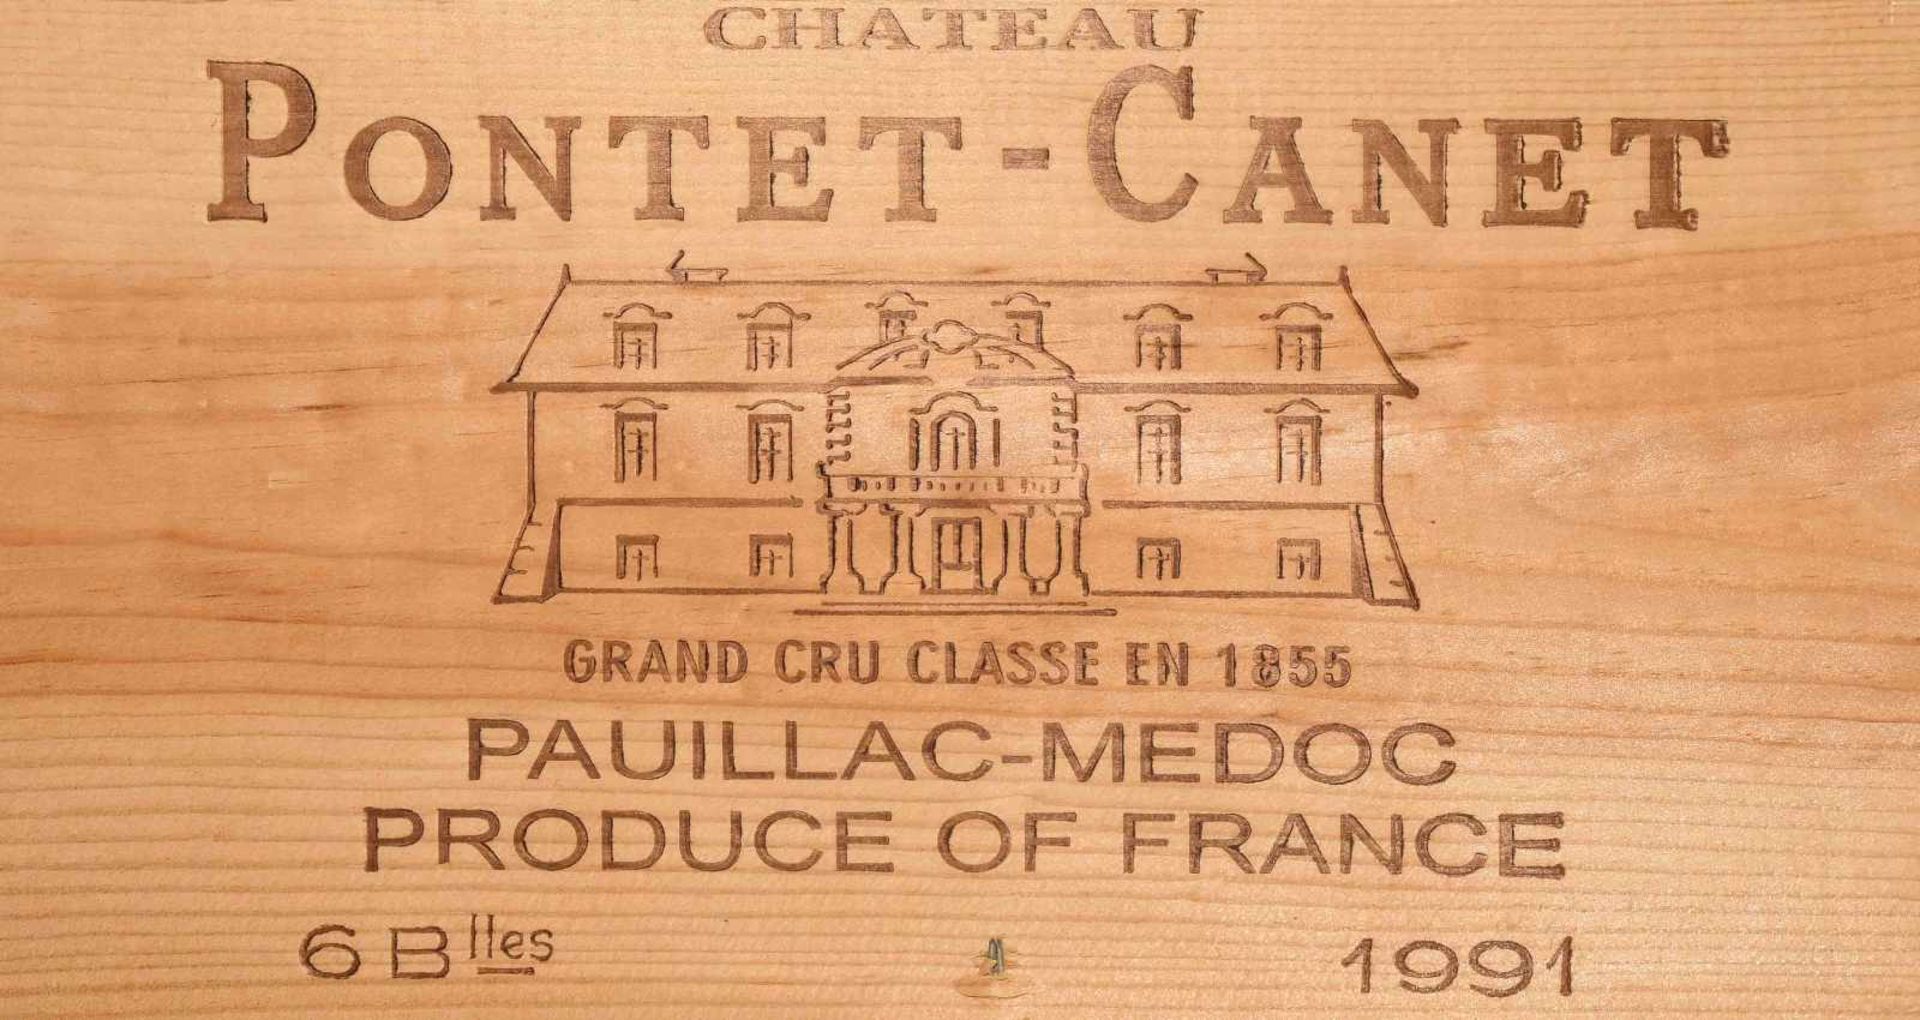 Chateau Pontet Canet1991. 5ème Cru classé. Pauillac. Orig. Holzkiste. 6 Flaschen.Chateau Pontet